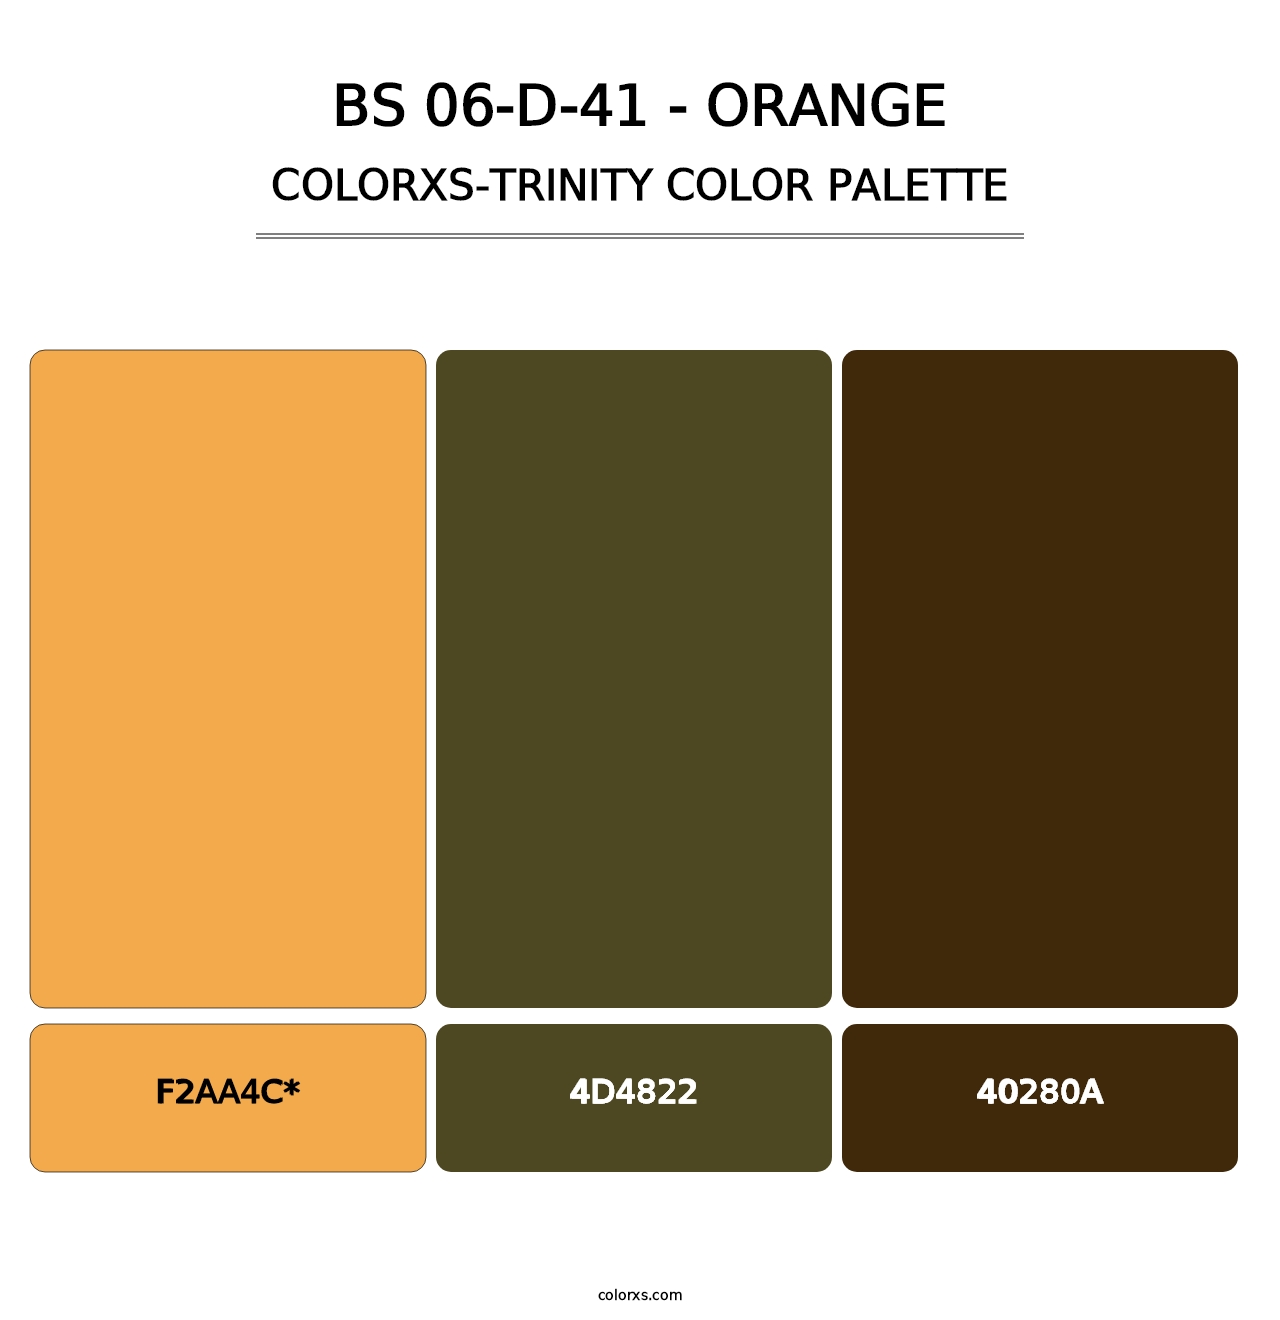 BS 06-D-41 - Orange - Colorxs Trinity Palette